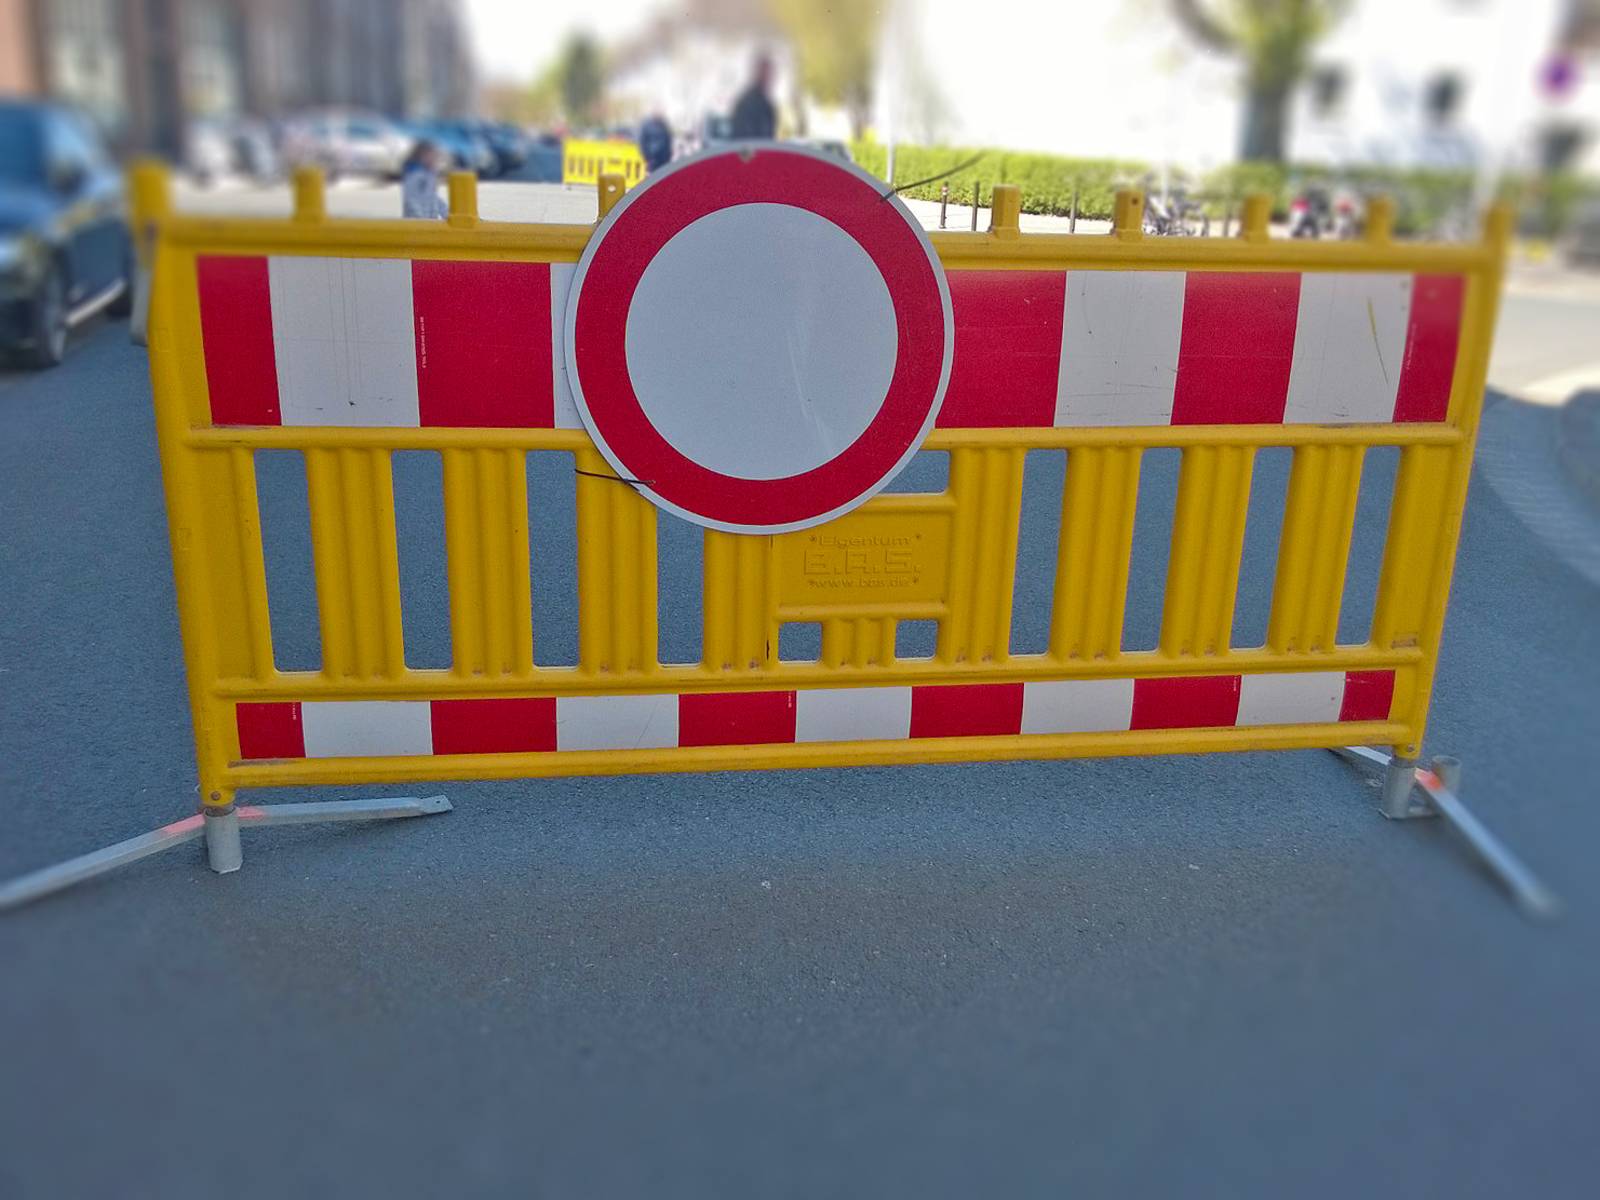 Symbolbild "Vollsperrung" – Verkehrsschild "Durchfahrt verboten"